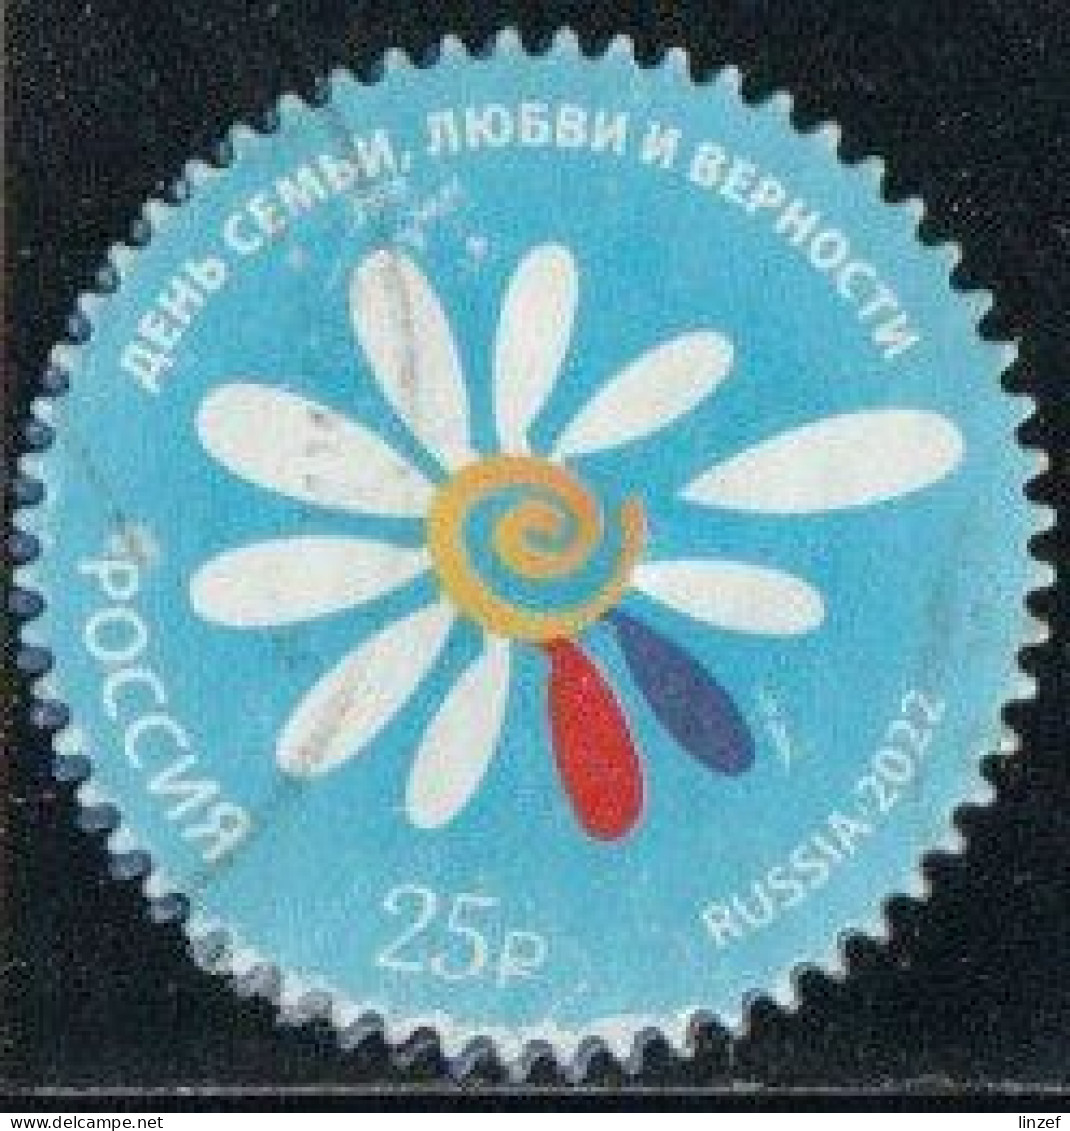 Russie 2022 - Jour De La Famille - Amour Et Fidélité - Oblitéré - Used Stamps